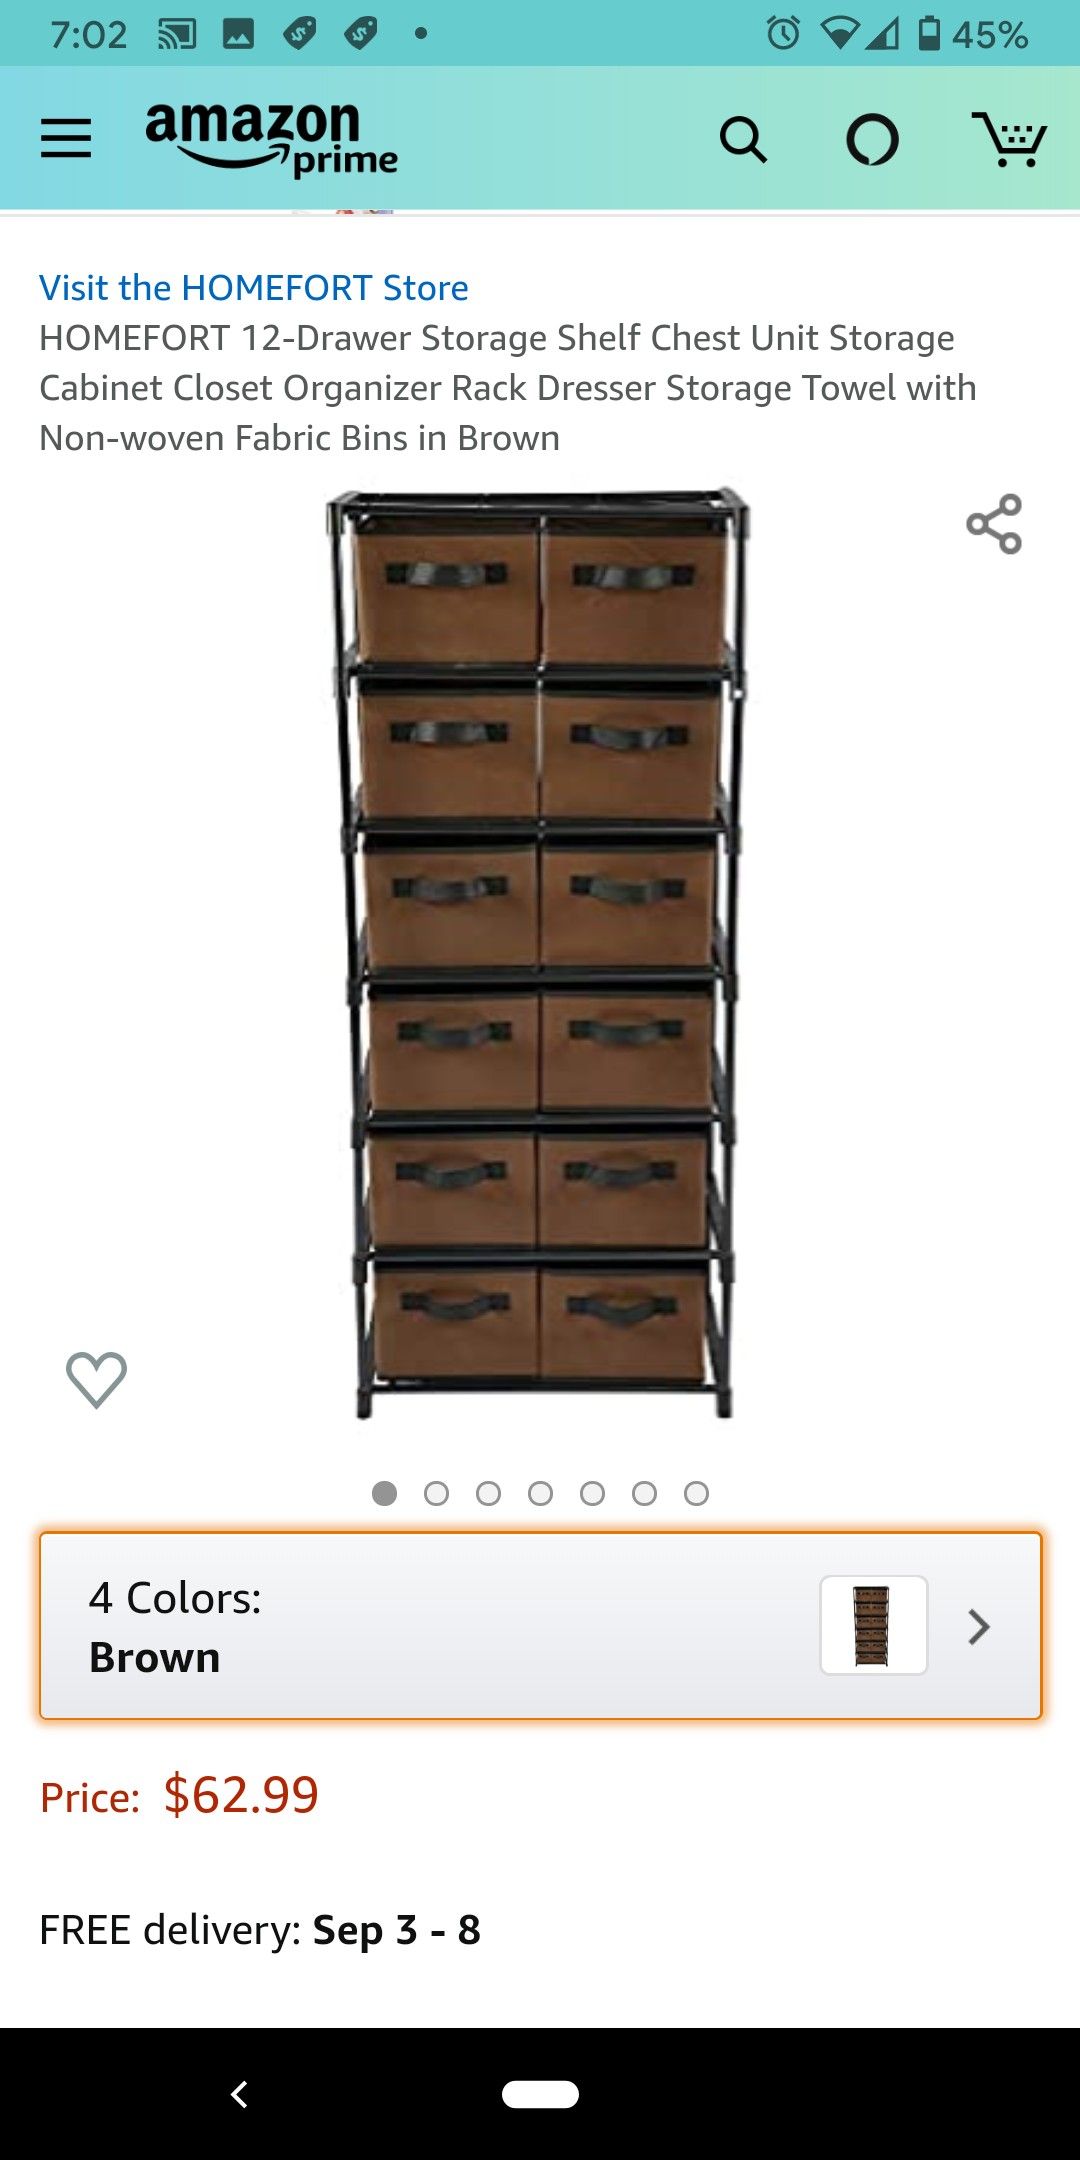 12-Drawer Storage Shelf Chest Unit Storage Cabinet Closet Organizer Rack Dresser Storage